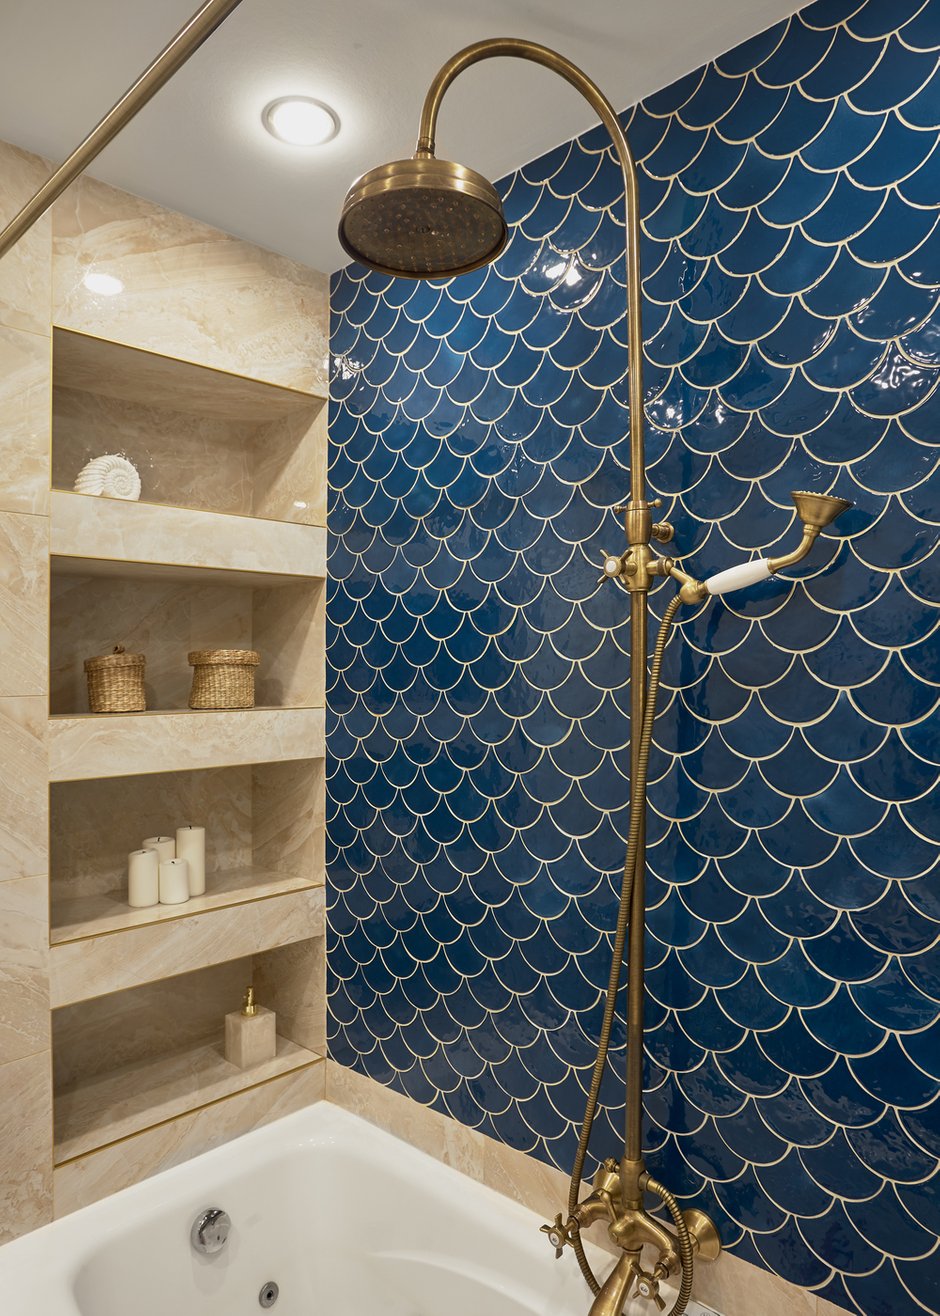 Настроение в ванной комнате задали плитка в виде чешуи и любовь хозяйки к морю и русалкам.